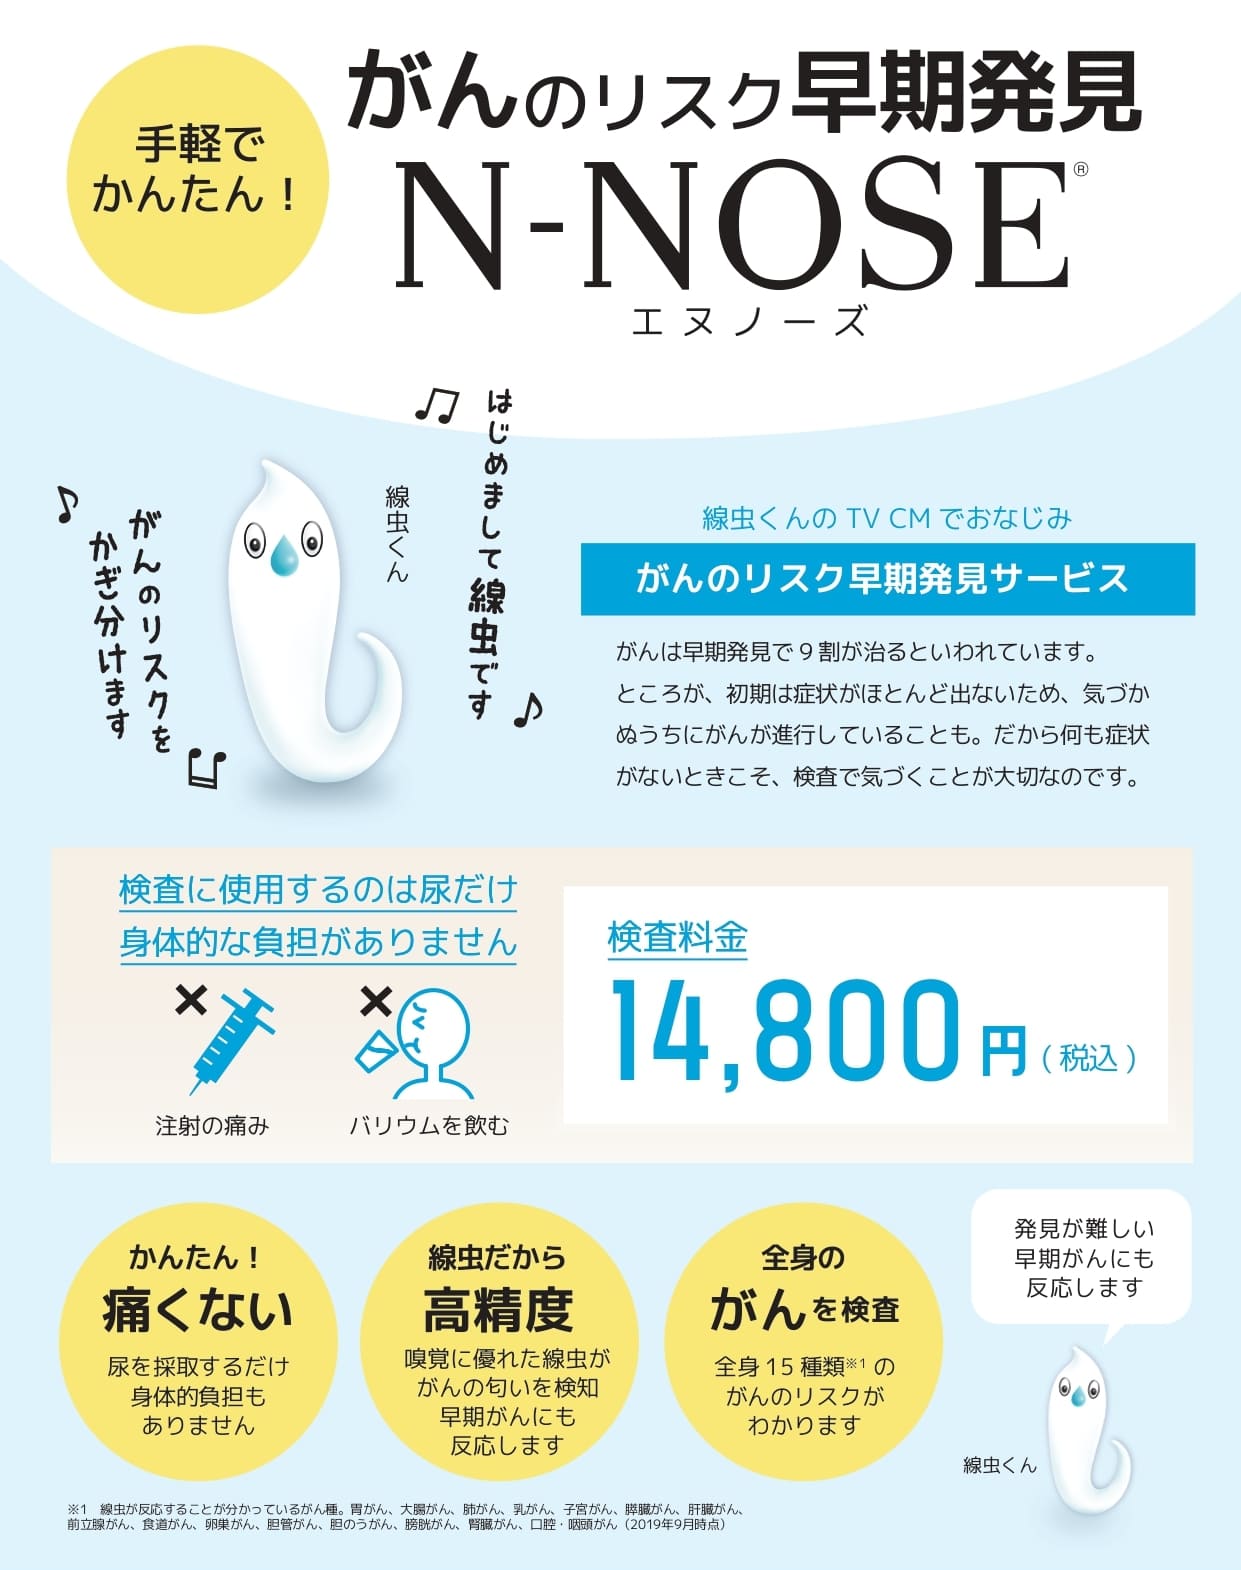 N-NOSE